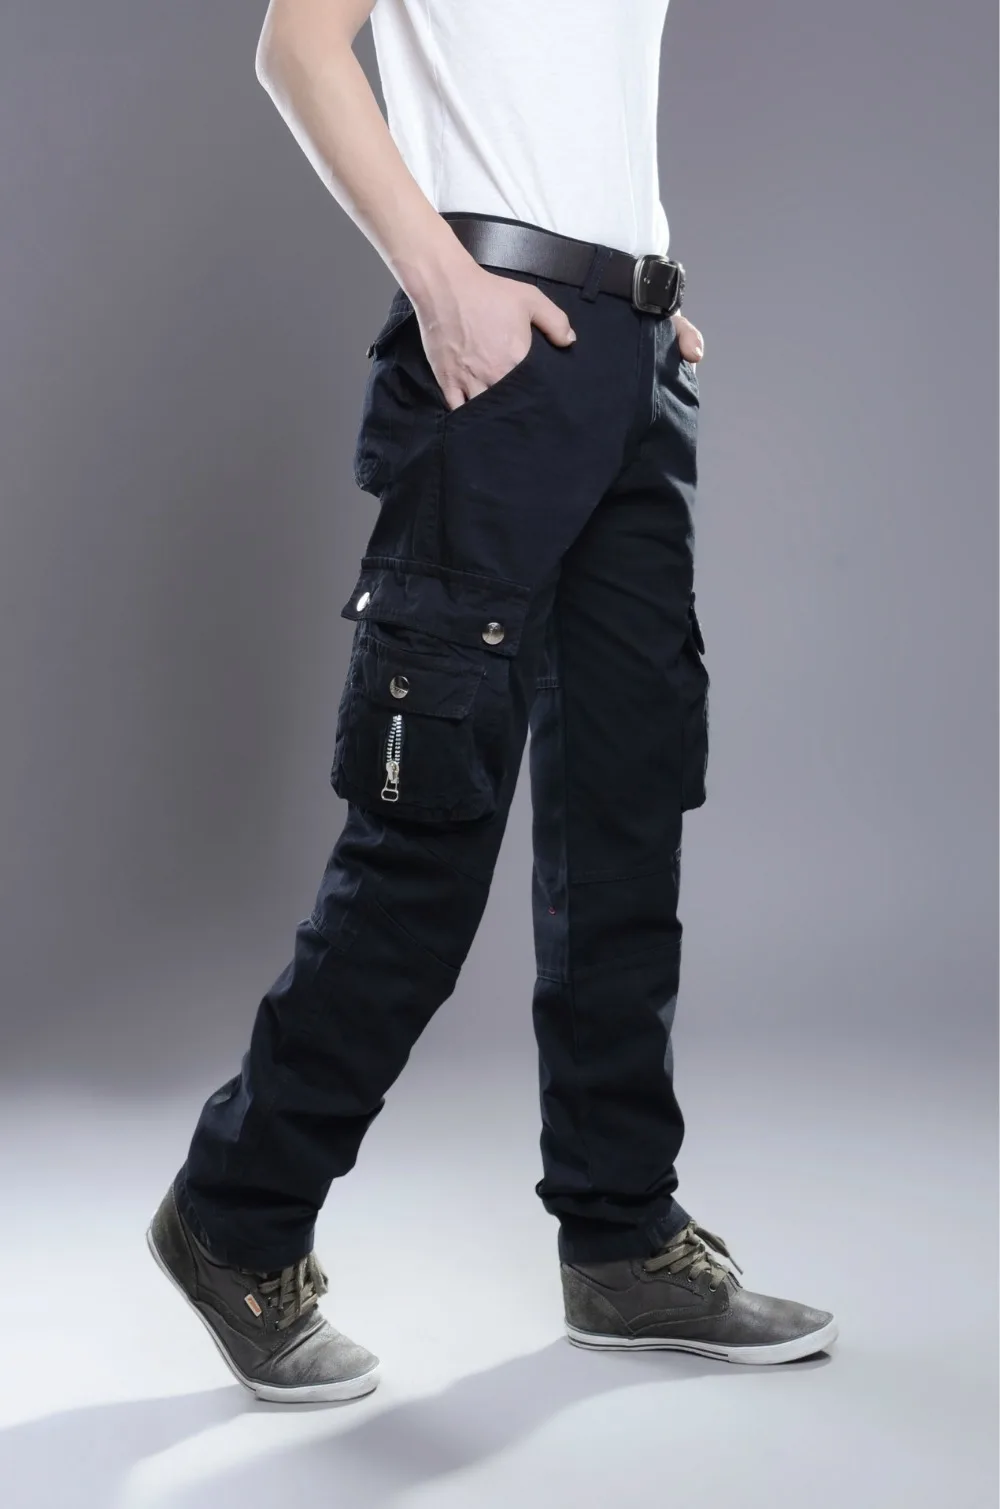 MIXCUBIC стиральная Военная униформа брюки для мужчин износостойкие Брюки Карго Для мужчин комбинезоны мульти-карман комбинезоны для мужчин Размер 28-38